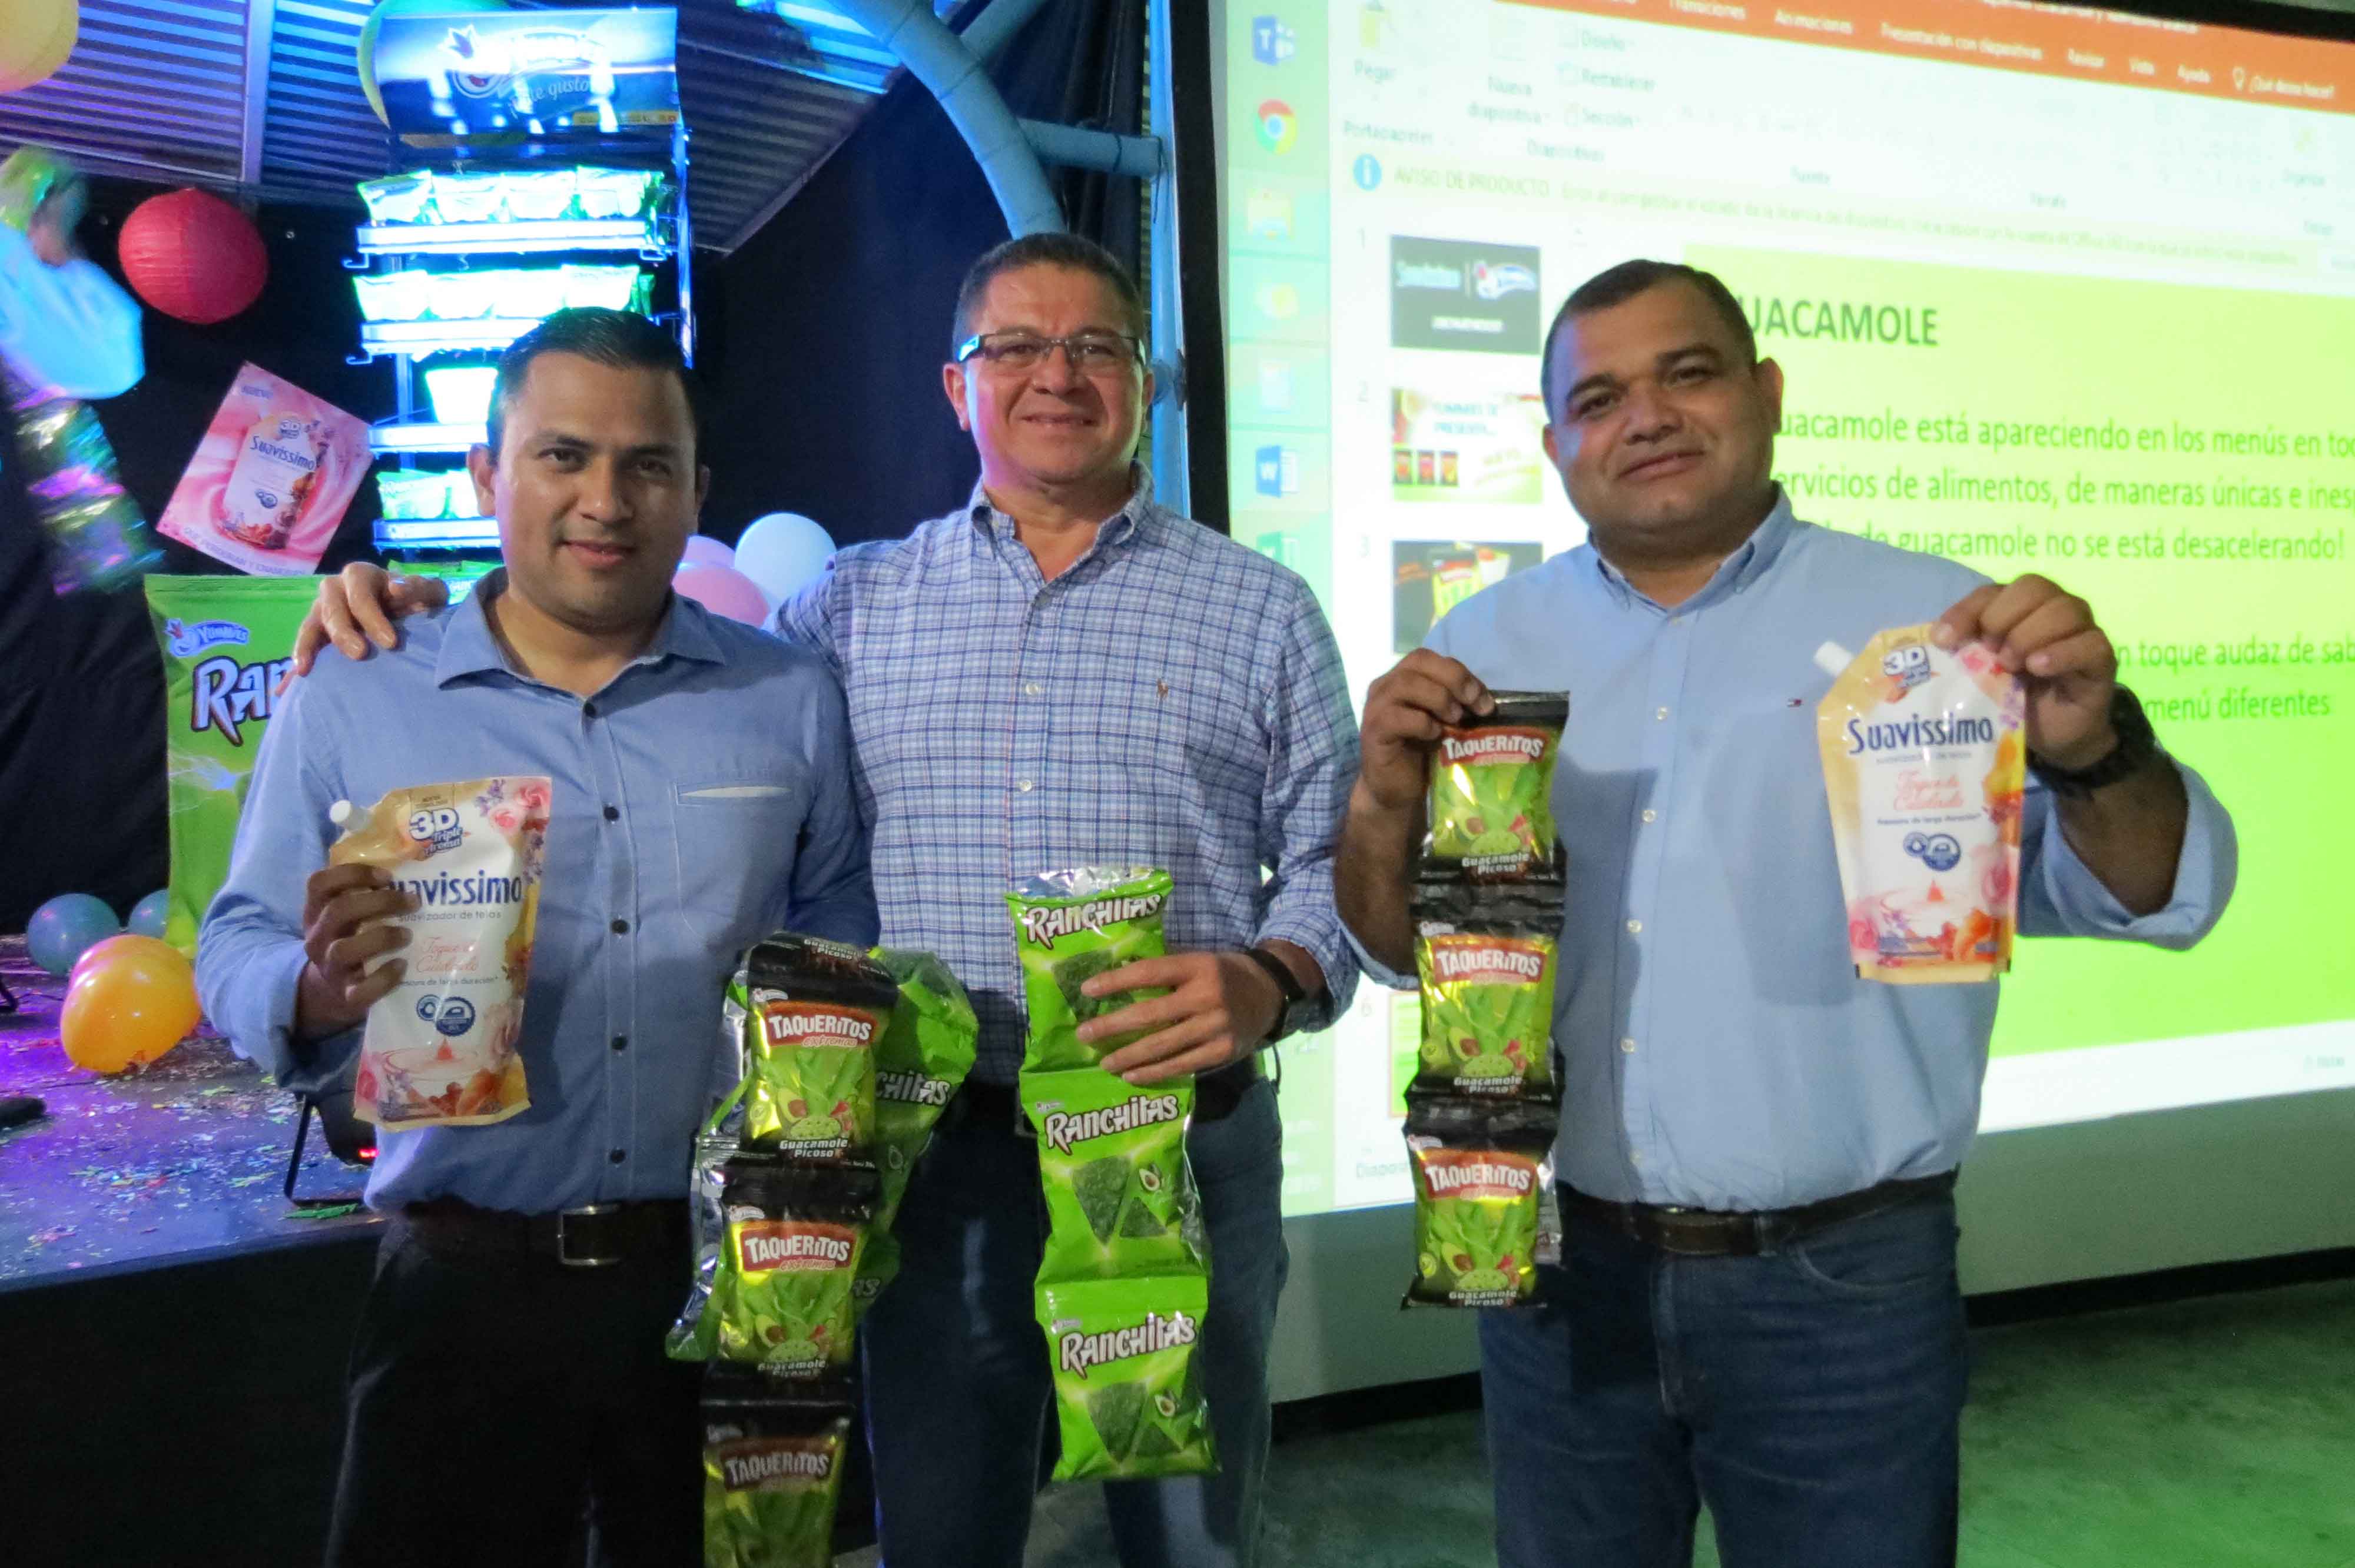 Dinant presenta sus nuevos productos:  Taqueritos Guacamole Picoso, Ranchitas Nacho Guacamole y  Suavissimo Toque de Cuidado